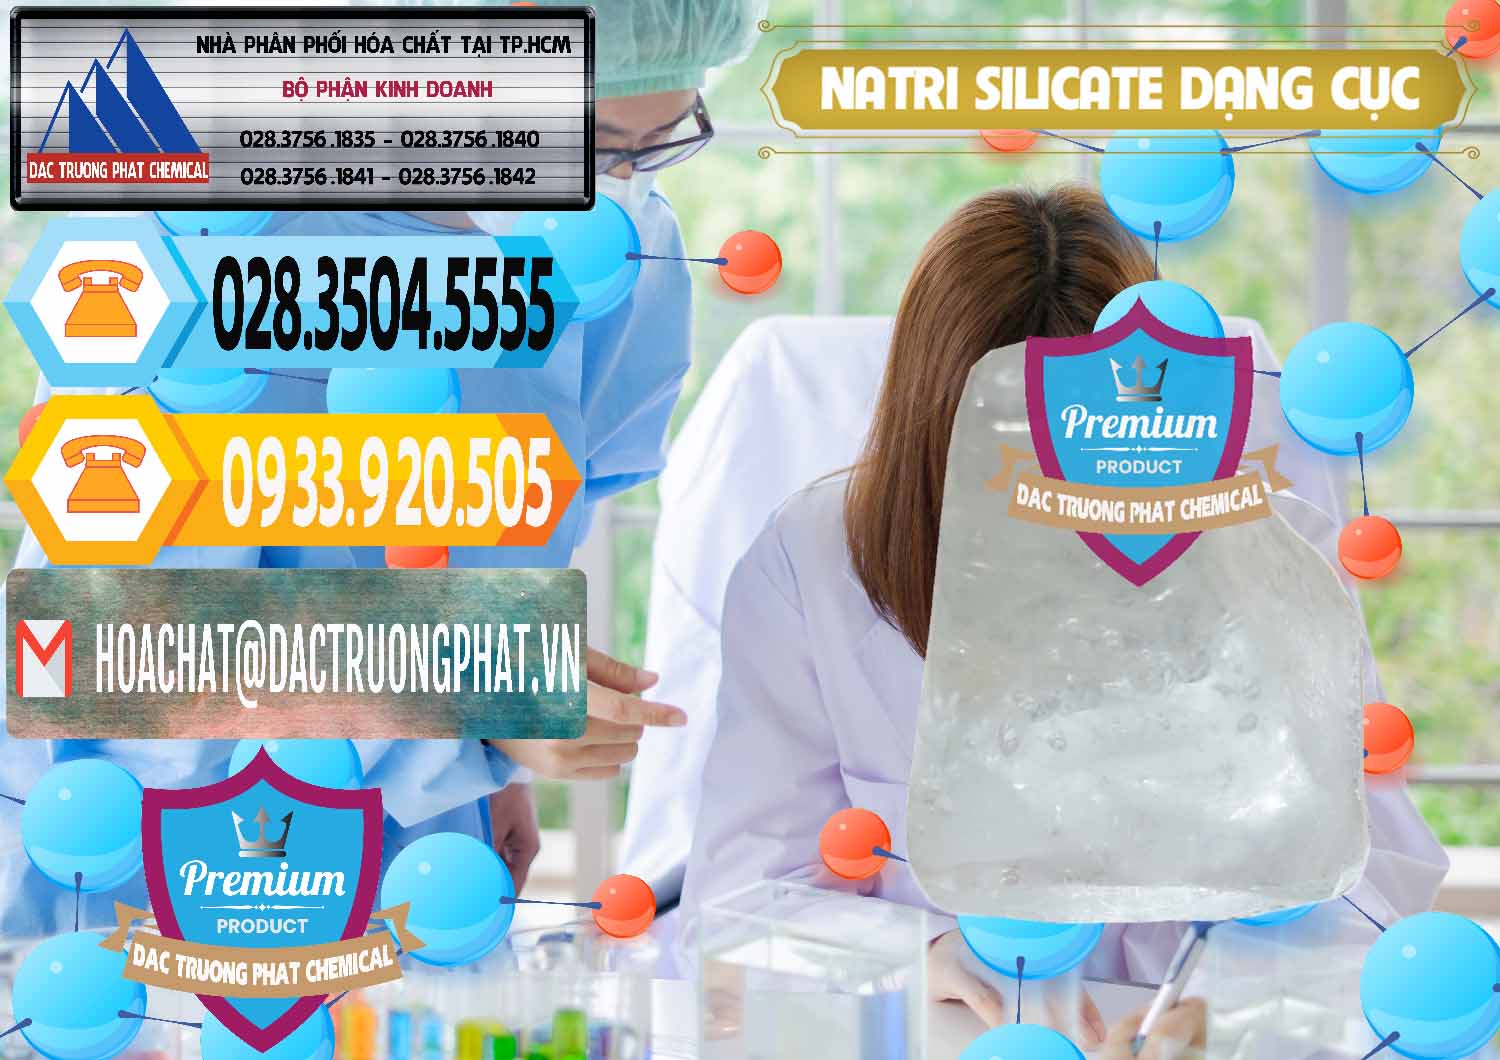 Chuyên bán - cung cấp Natri Silicate - Na2SiO3 - Keo Silicate Dạng Cục Ấn Độ India - 0382 - Phân phối và cung cấp hóa chất tại TP.HCM - hoachattayrua.net